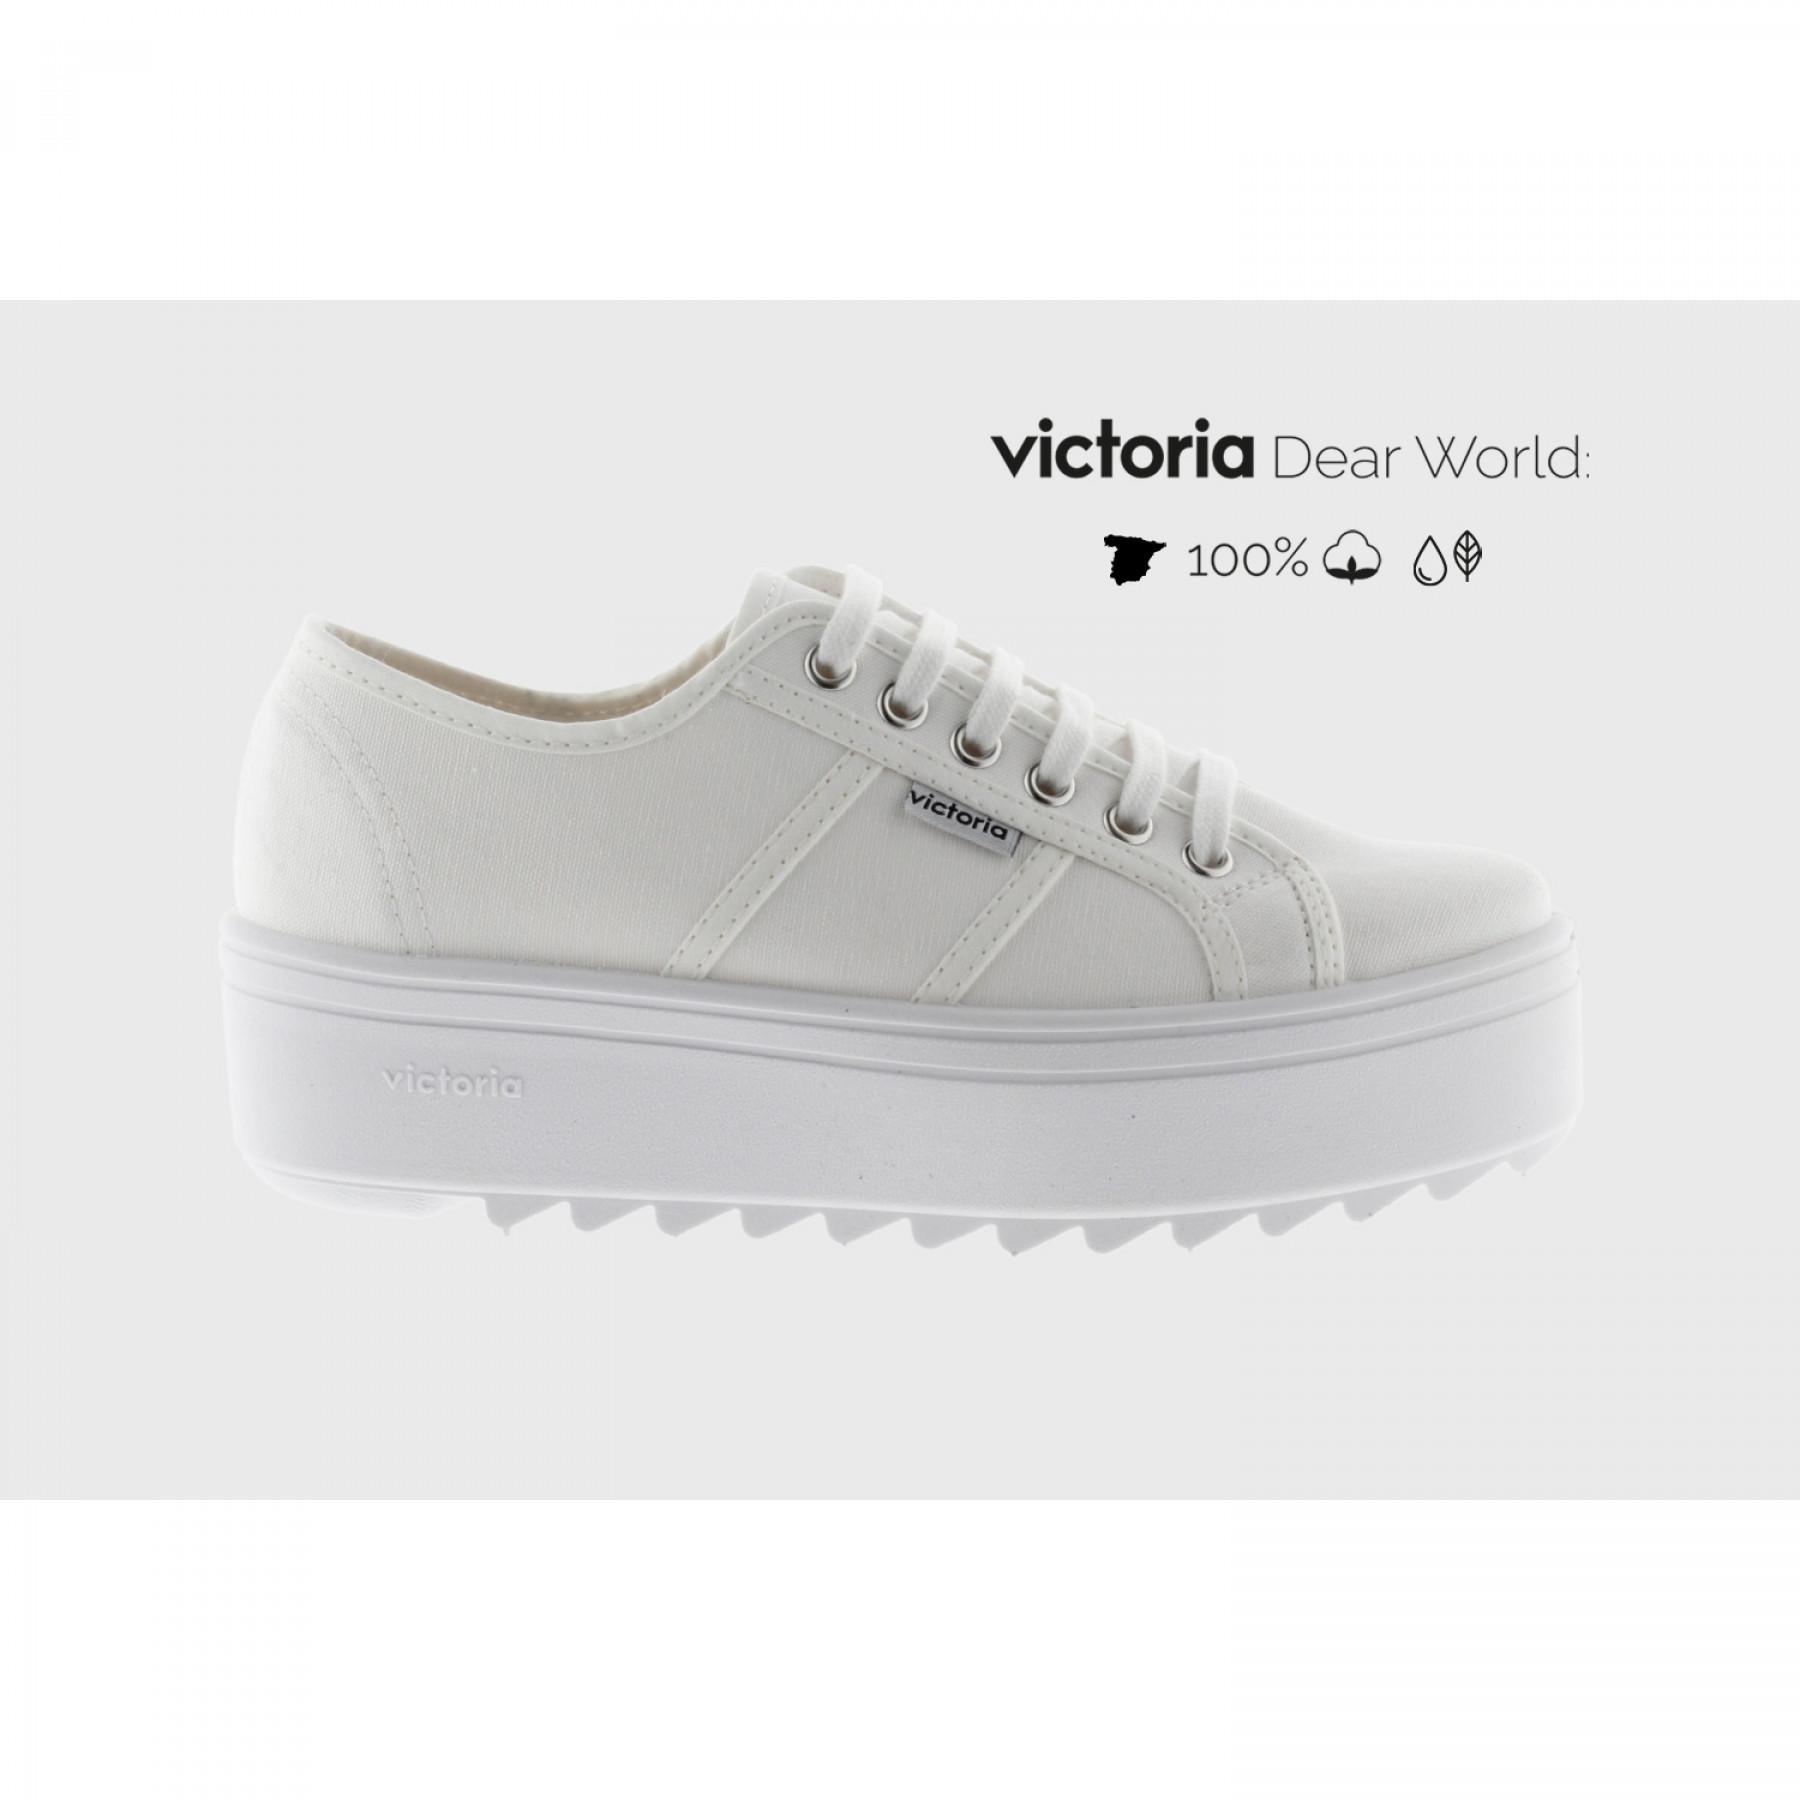 Sneakers Victoria sierra toile